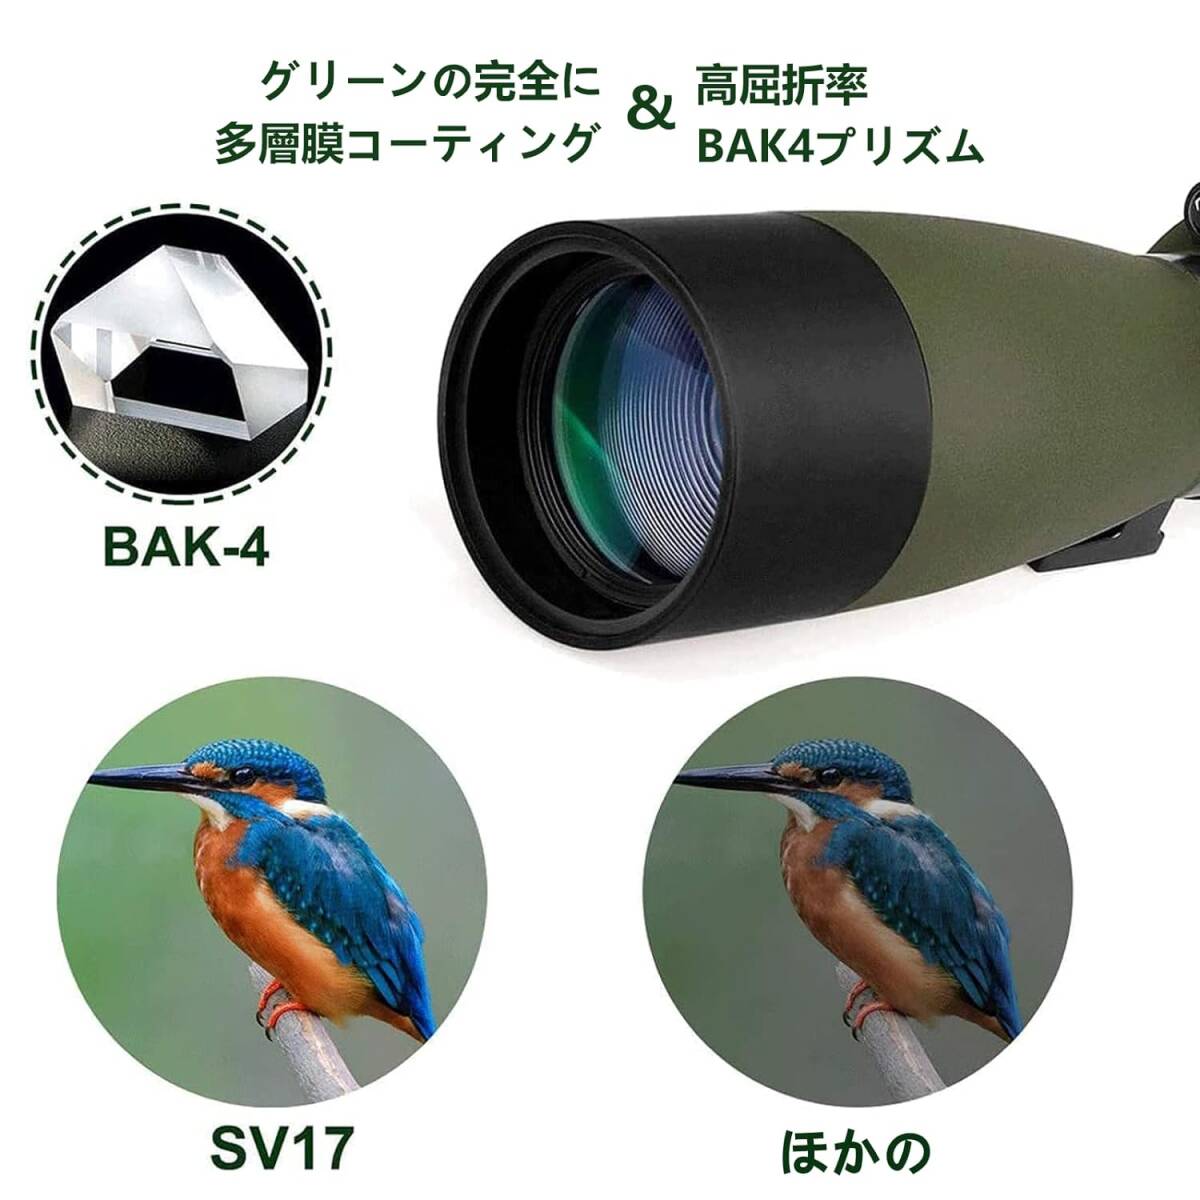 フィールドスコープ 25-75x70mm スポッティングスコープ BAK4プリズム バードウォッチング IPX7防水 アーチェリー 野鳥観察 射撃 グリーン_画像2